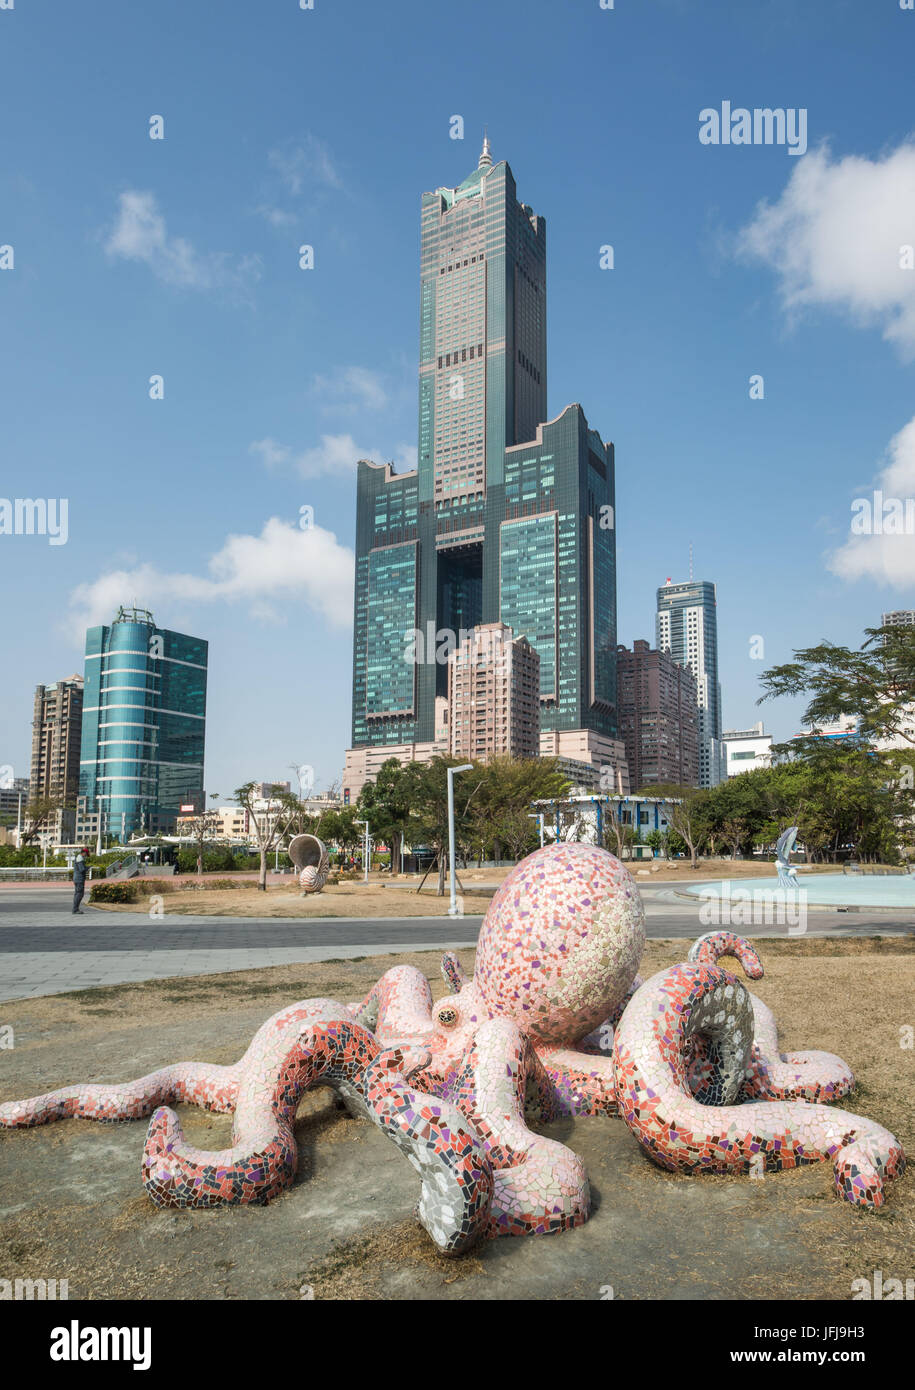 Taiwan, Kaohsiung City, Tuntex Sky Tower, Stock Photo